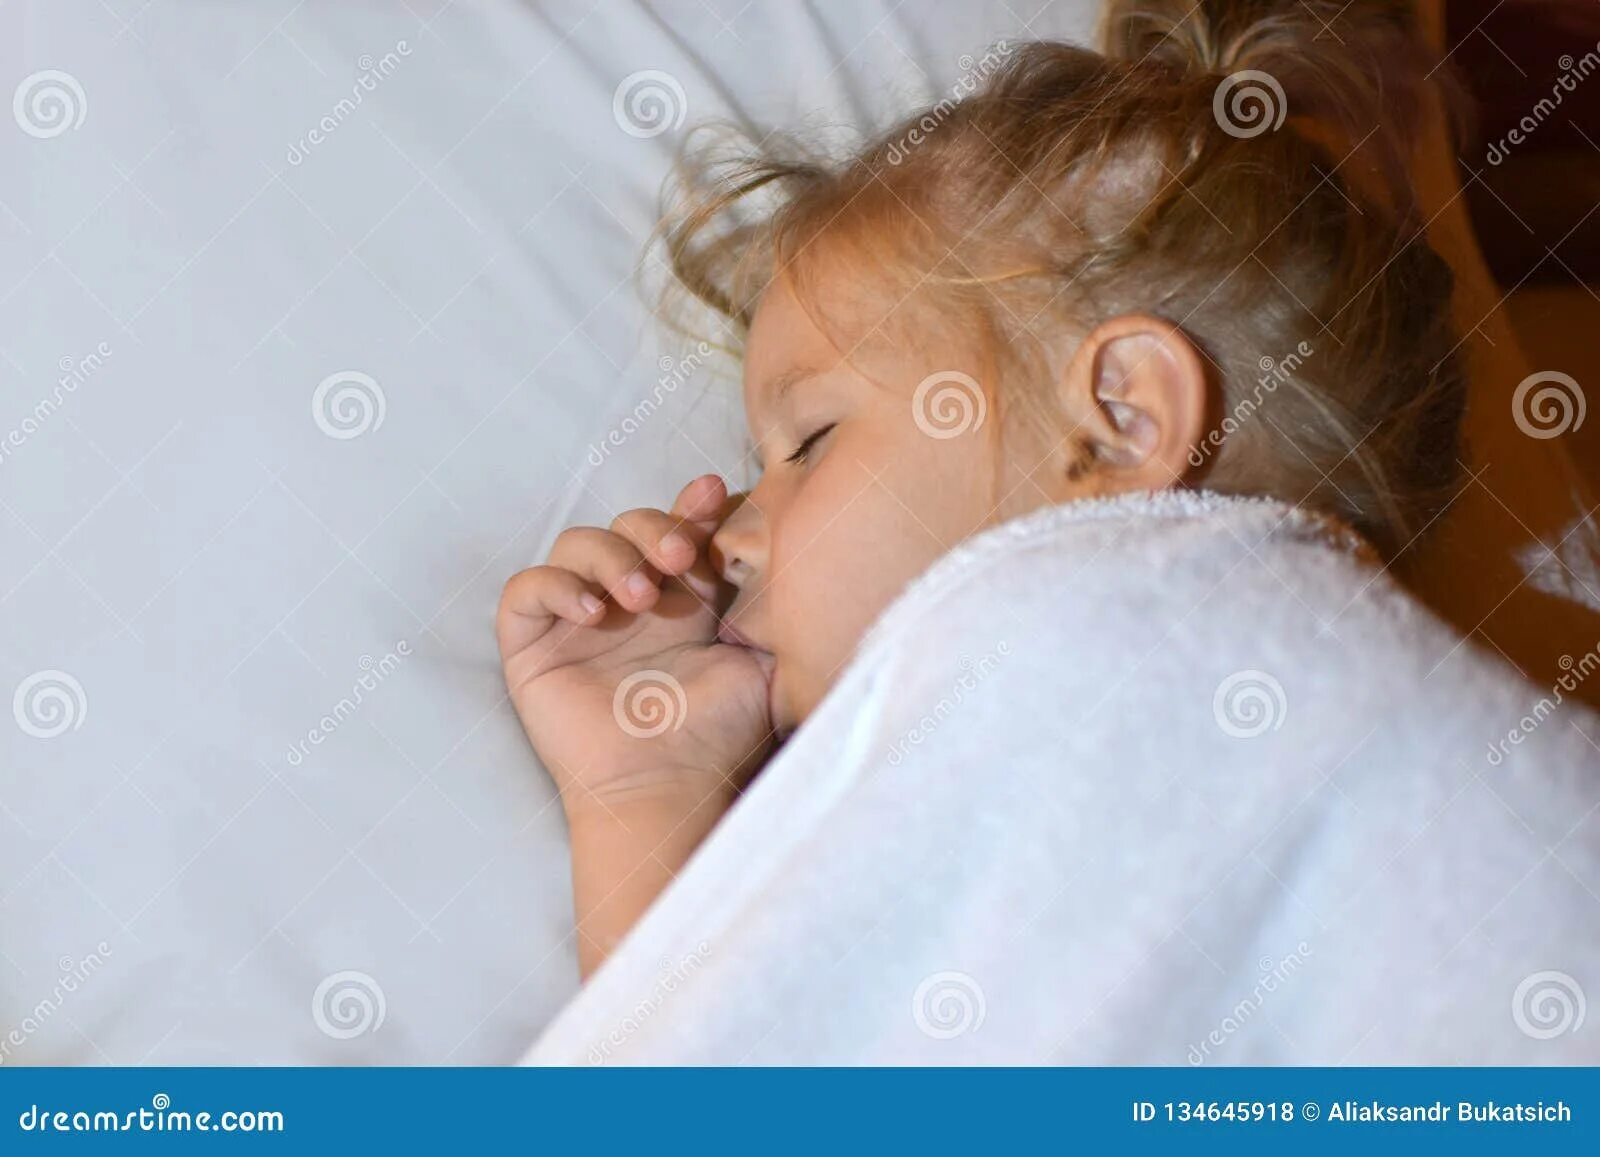 Сую пальцы спящей. Сосание девочки во сне. Сосание девочки ребенка. Дети с пал цем во рту.